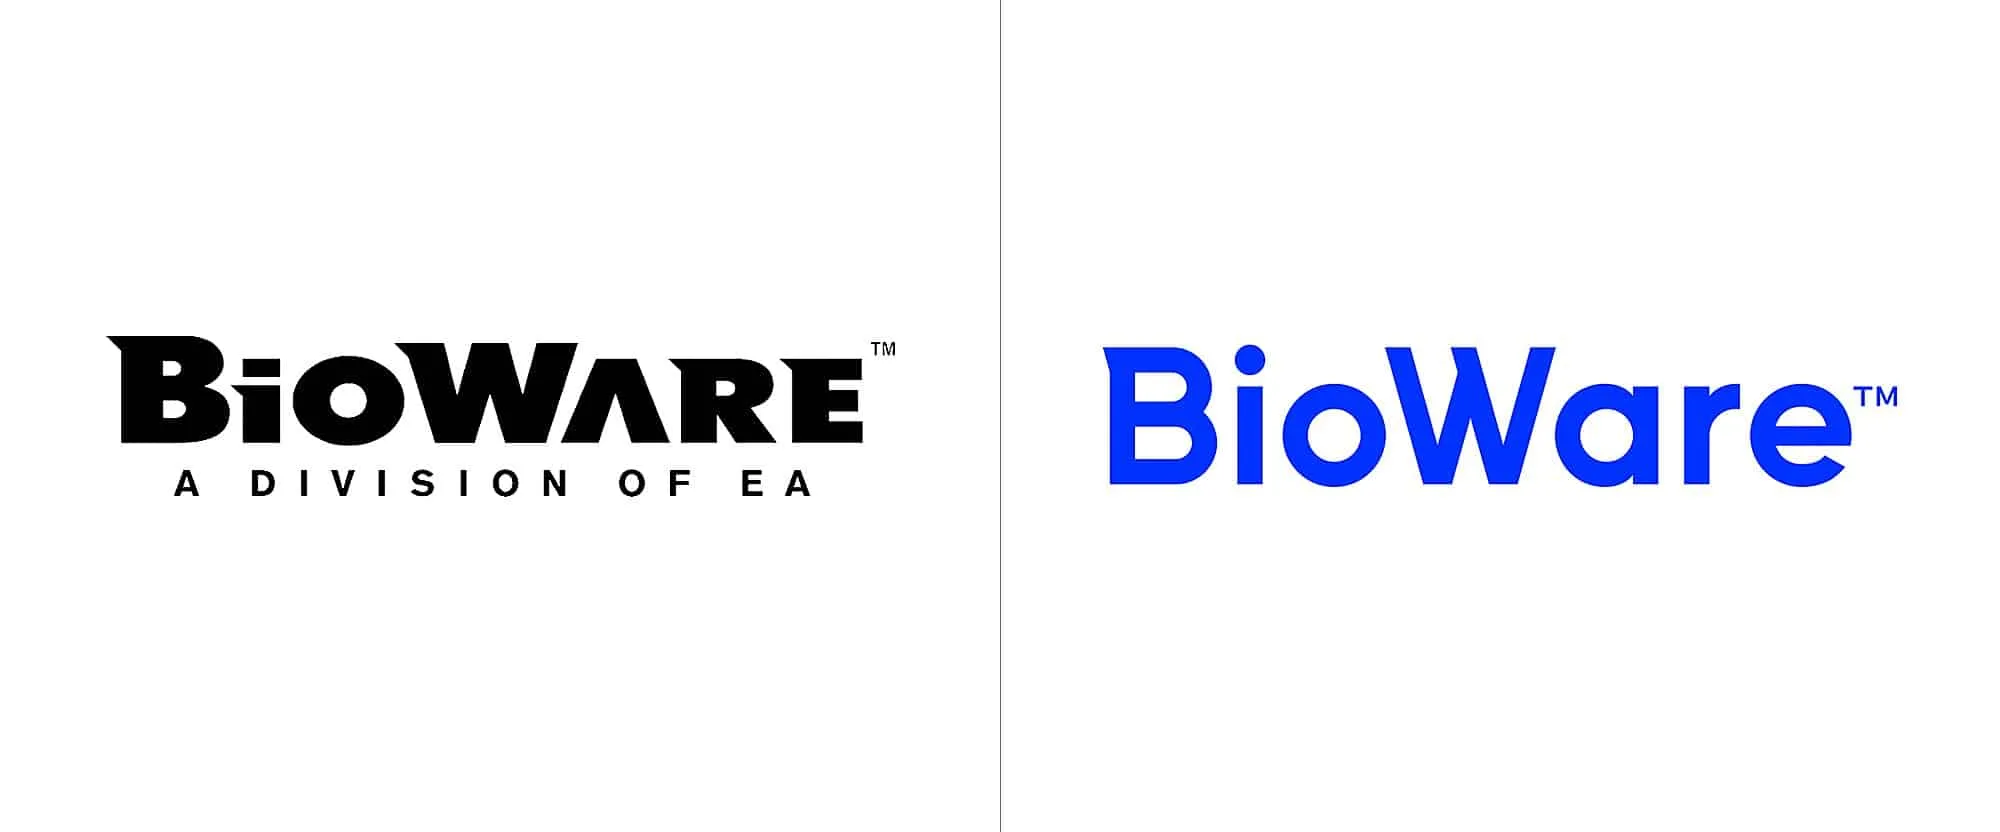 BioWare усердно работают над улучшением своего имиджа